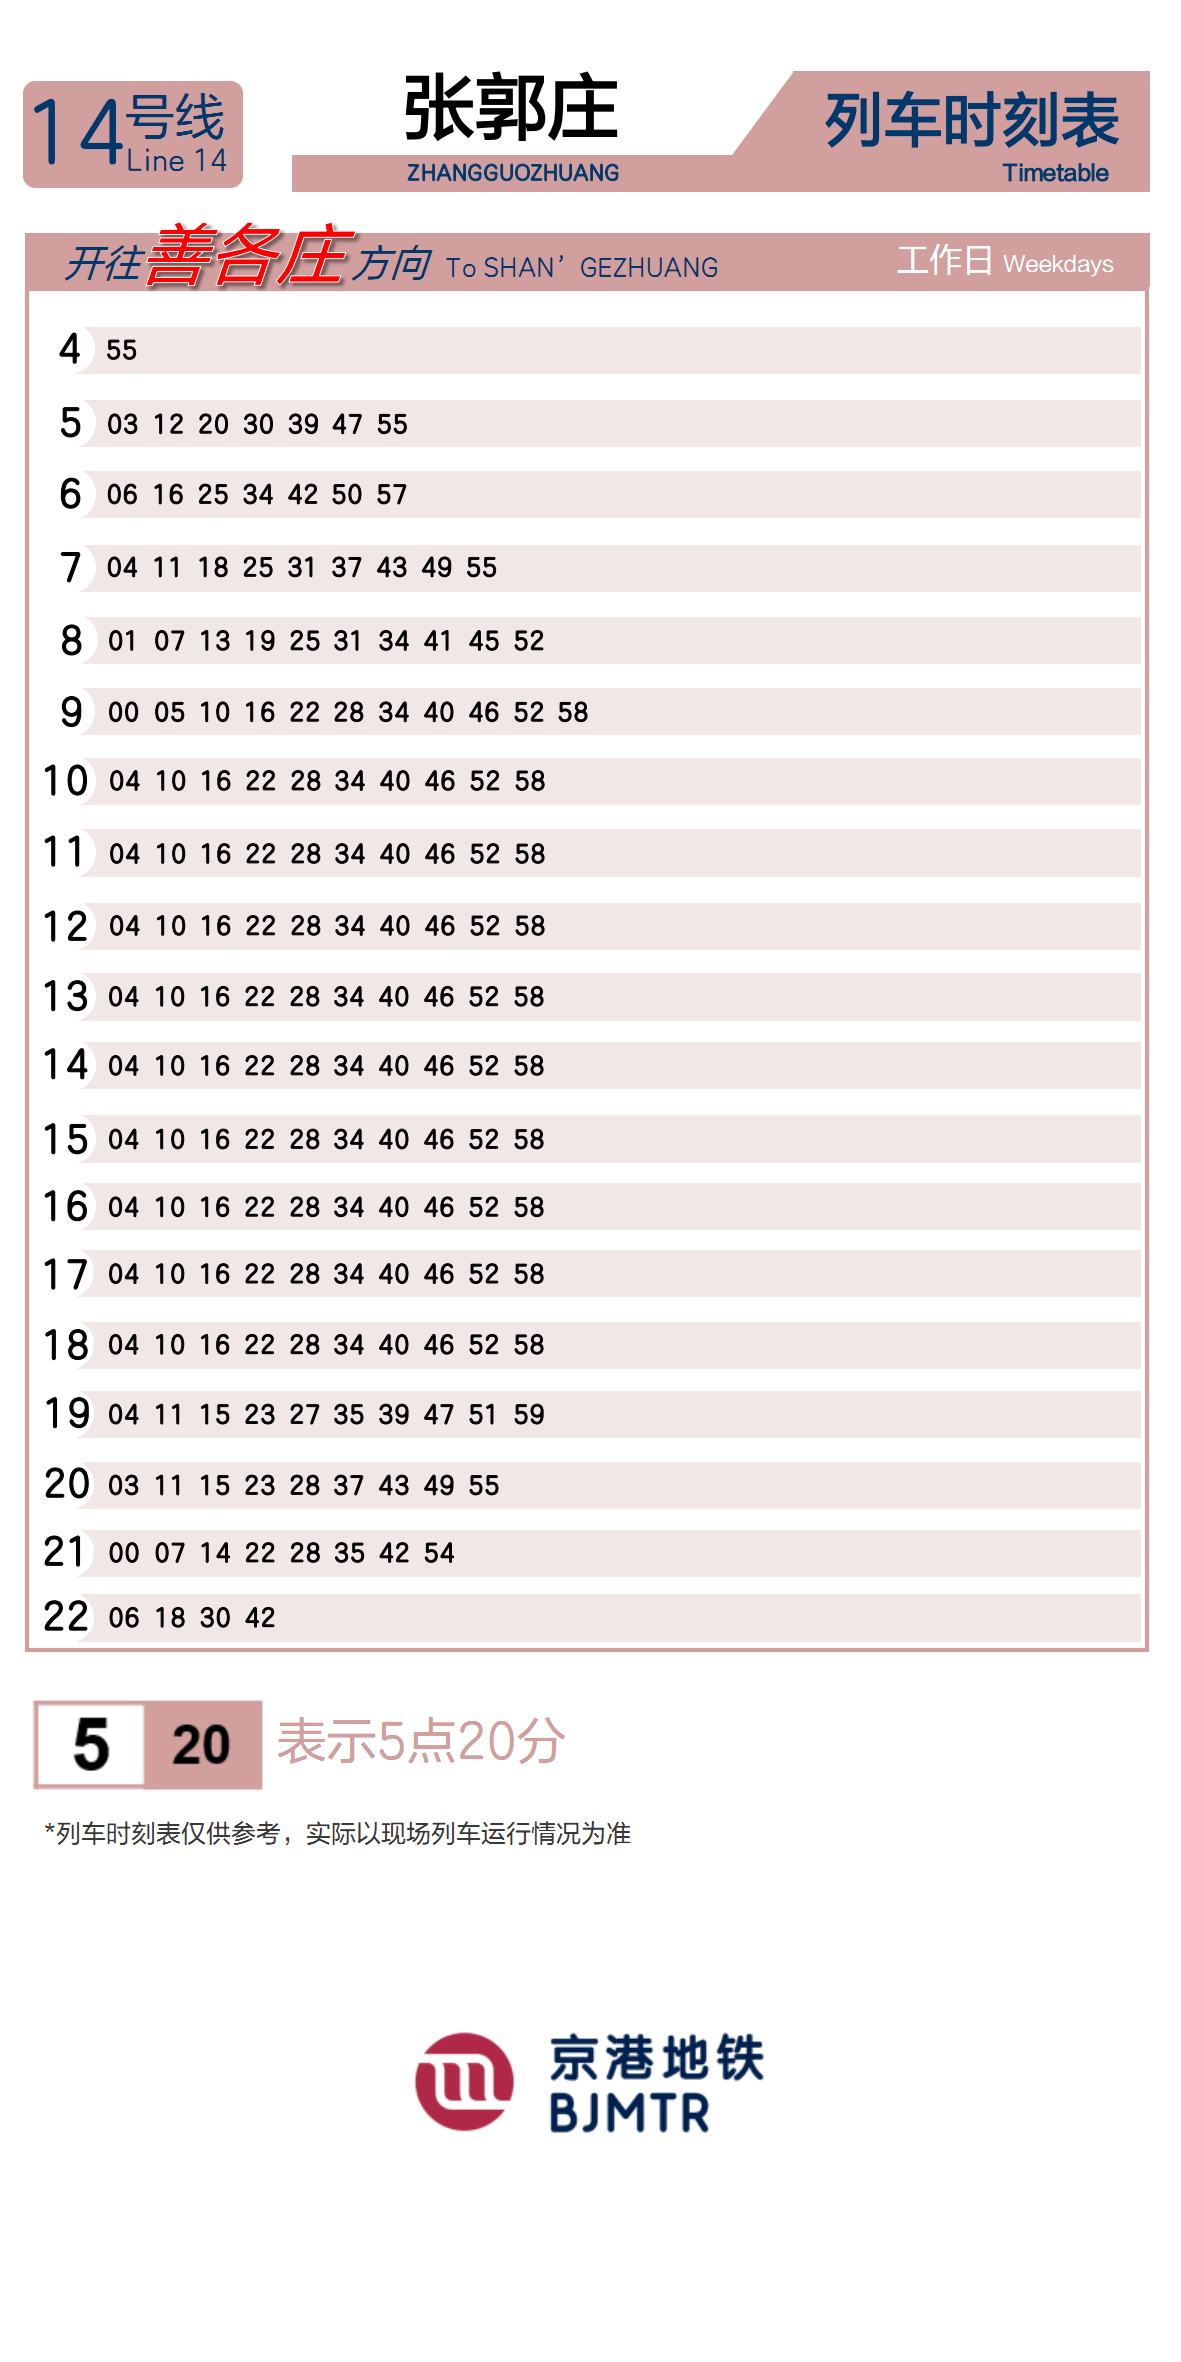 Line 14Zhangguozhuang时刻表